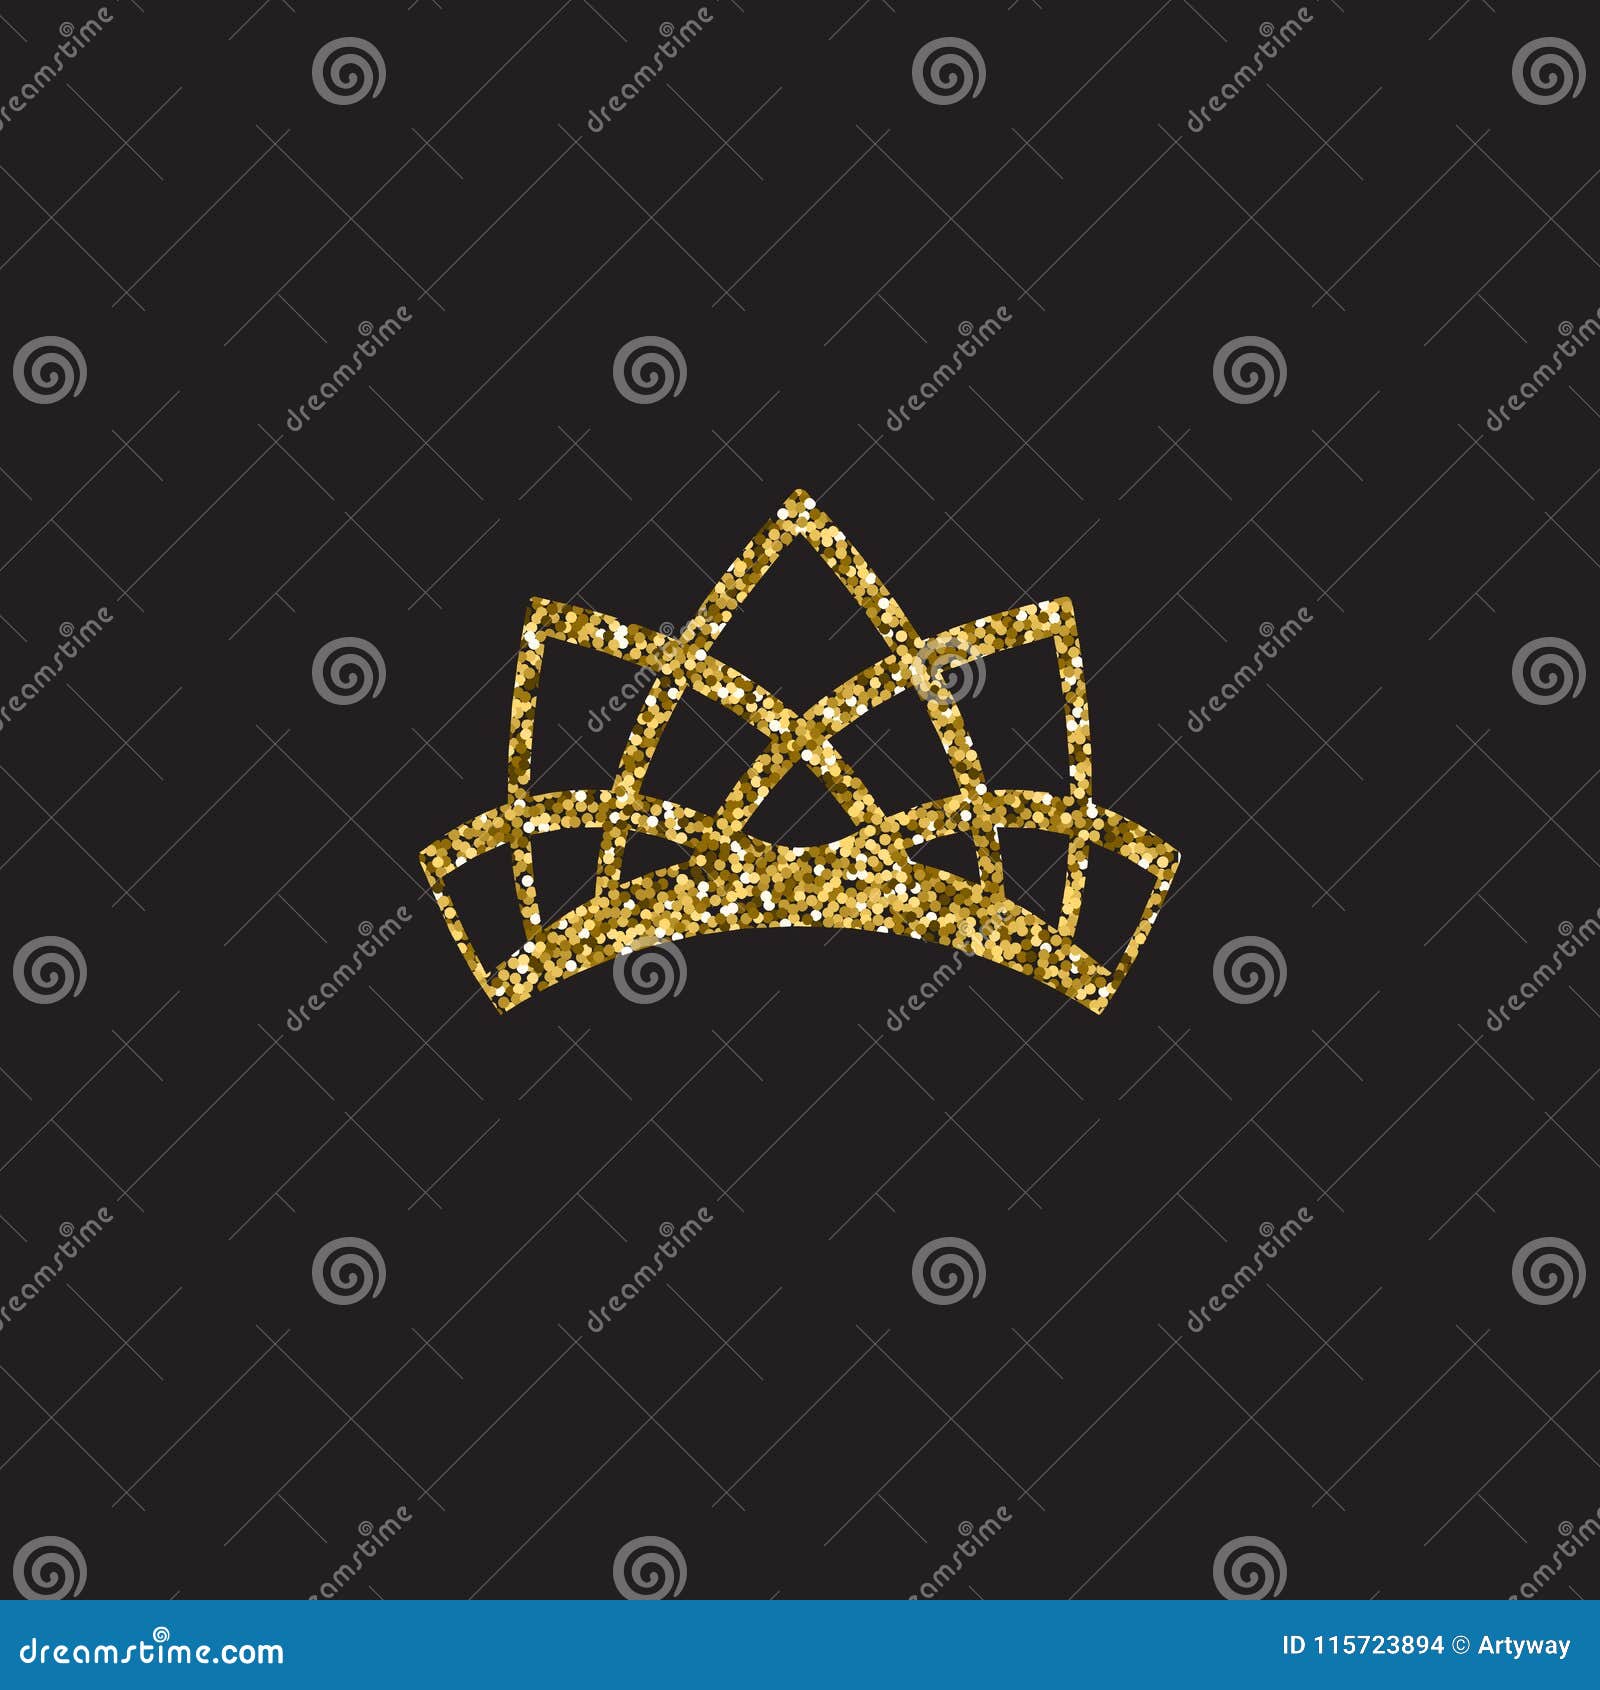 Vương miện hoàng gia vàng vàng, phụ kiện hoàng kim độc đáo, được cách ly trên nền đen sẽ mang đến cho bạn cảm giác mạnh mẽ và tôn nghiêm của một nữ hoàng thực sự. Khám phá ngay để trải nghiệm sự trang trọng và quý phái của vương miện hoàng gia này.